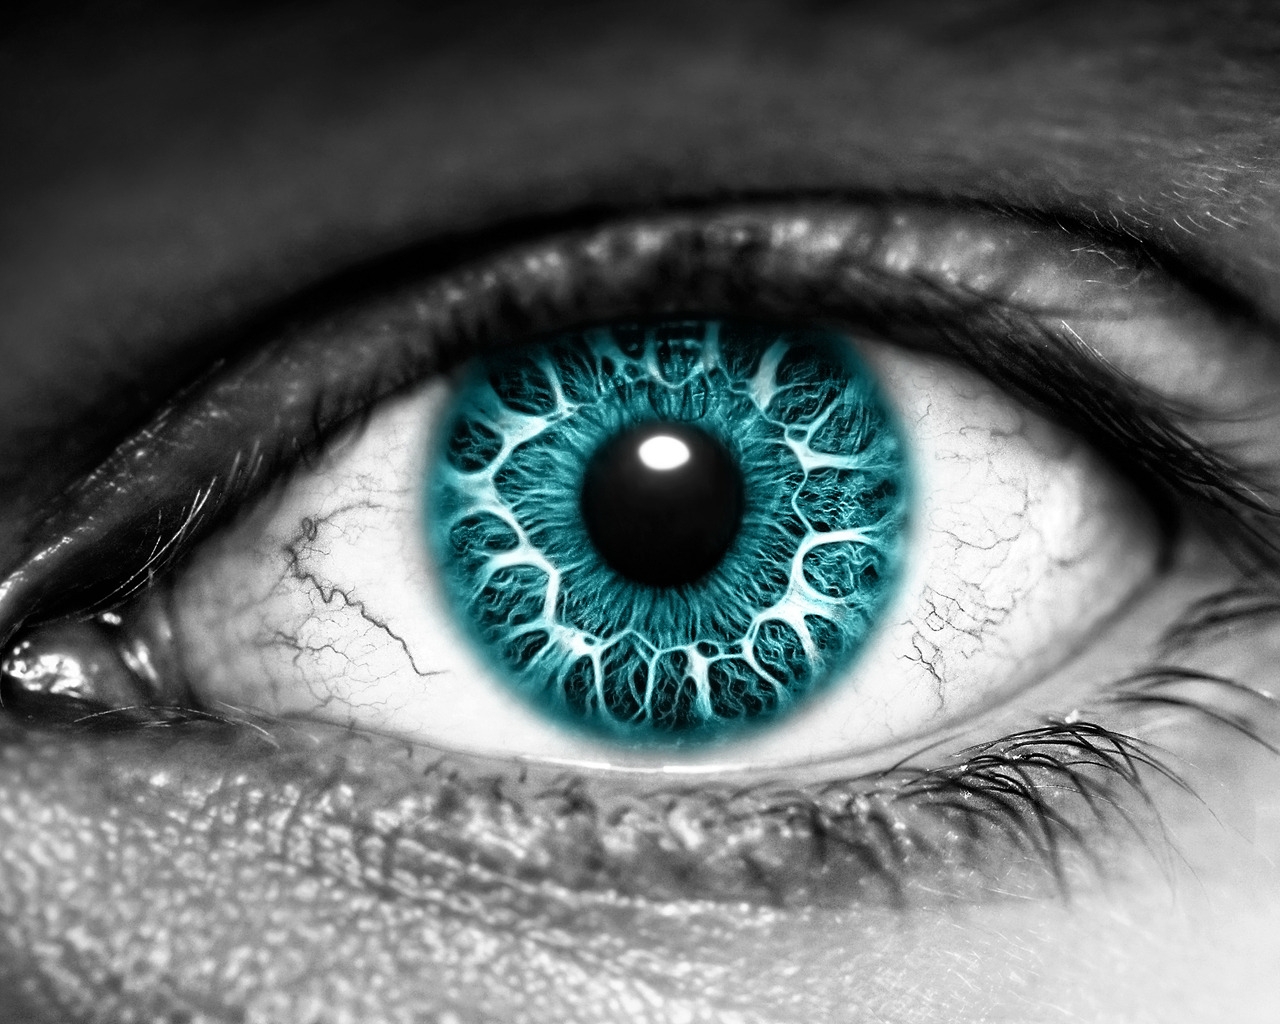 Azure Eye for 1280 x 1024 resolution